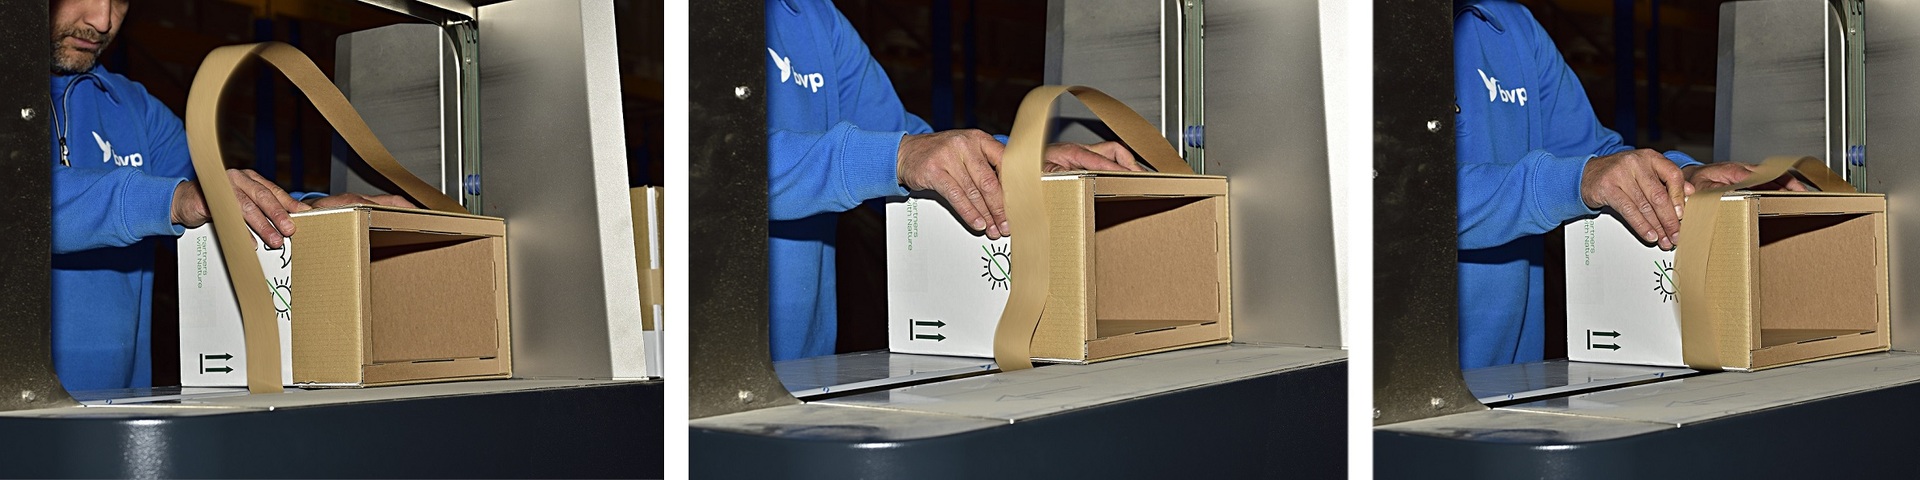 Efficiency voor duurzame verpakking van BVP: Klaar voor gebruik dankzij banderol